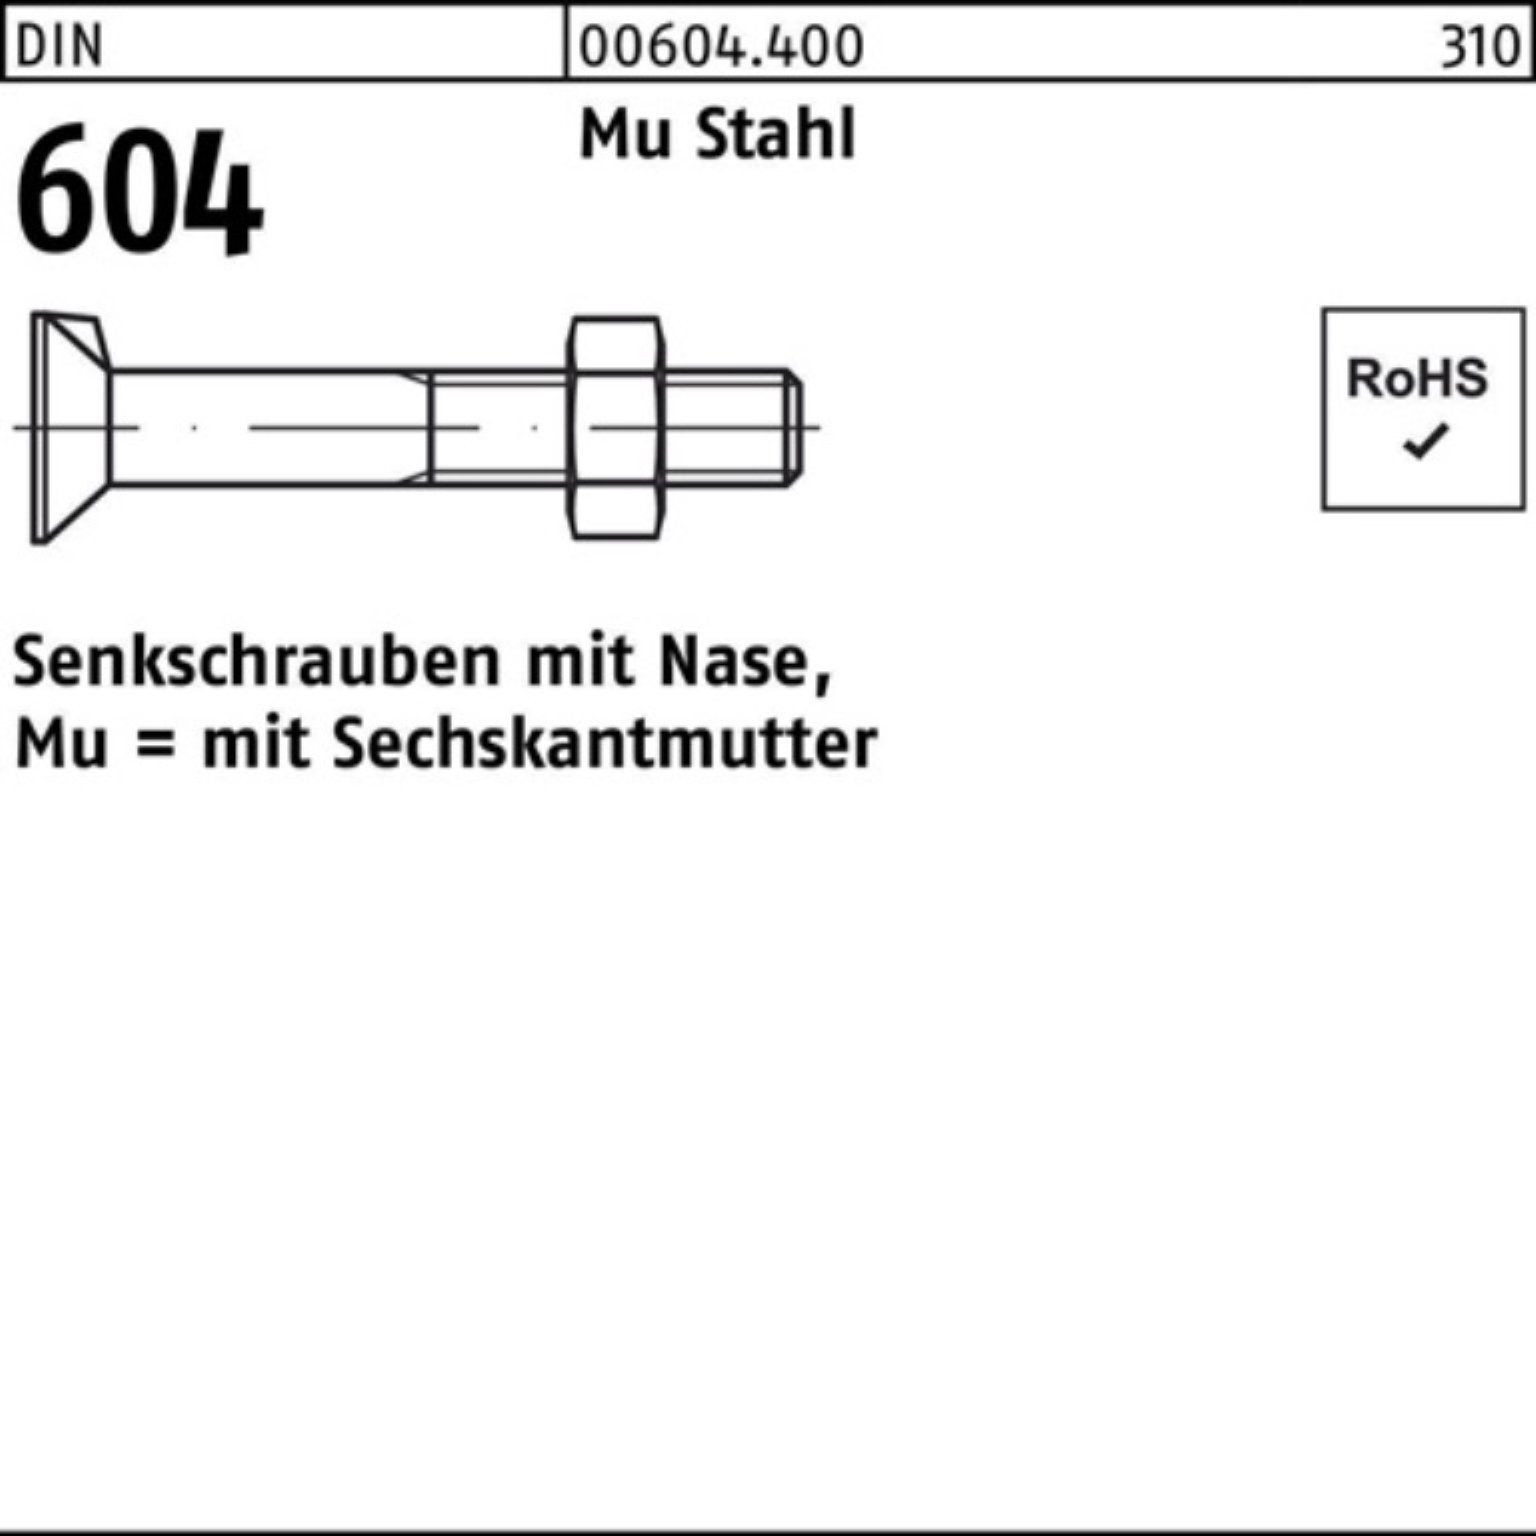 4.6 604 2 DIN Nase/6-ktmutter Senkschraube Pack Mu 100er M16x Senkschraube Stahl Reyher 70